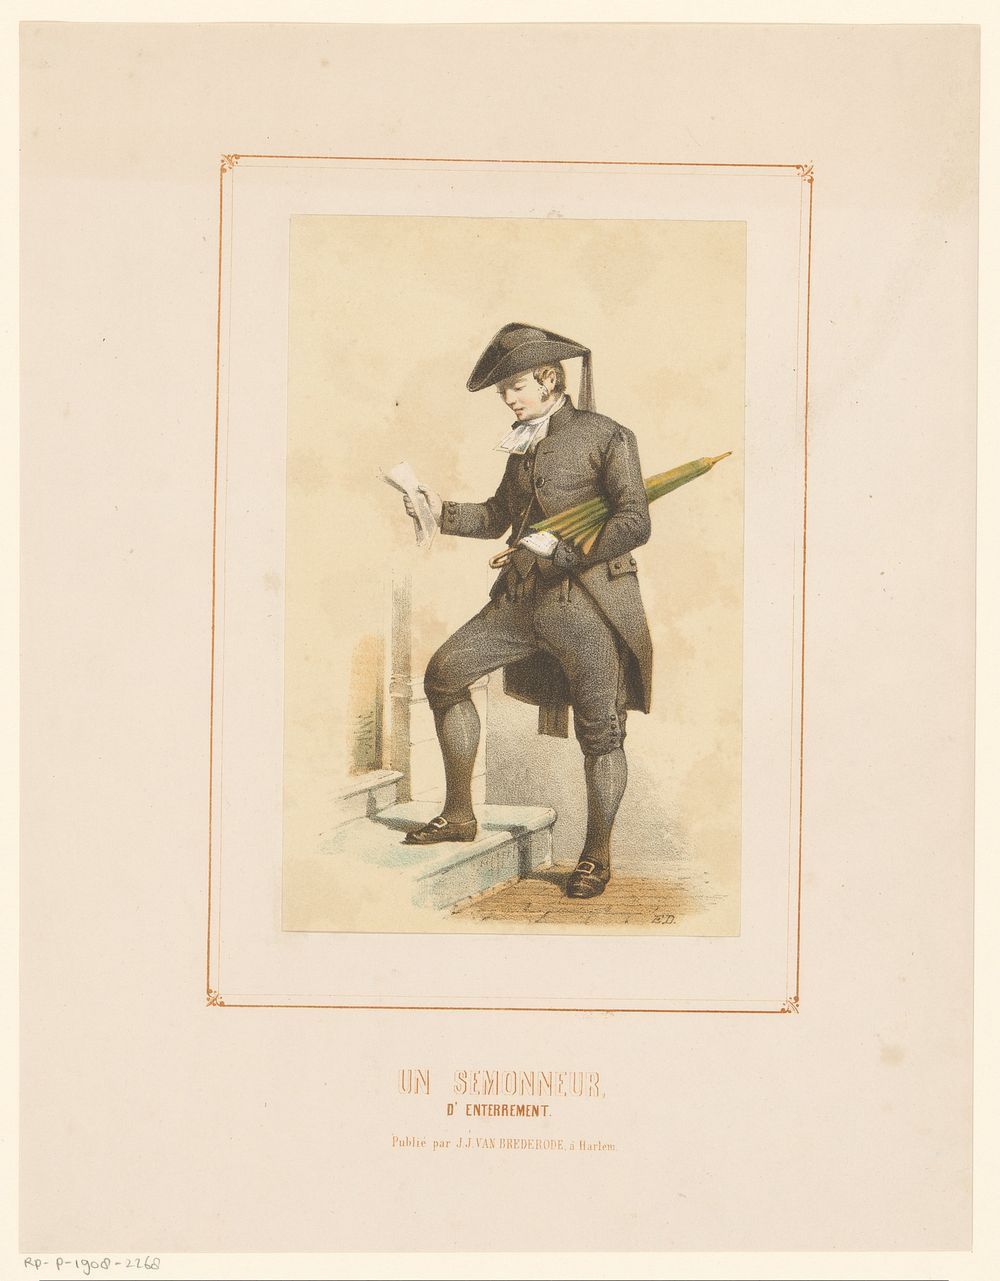 Begrafenisondernemer (1849 - 1873) by Jan Striening and J J van Brederode